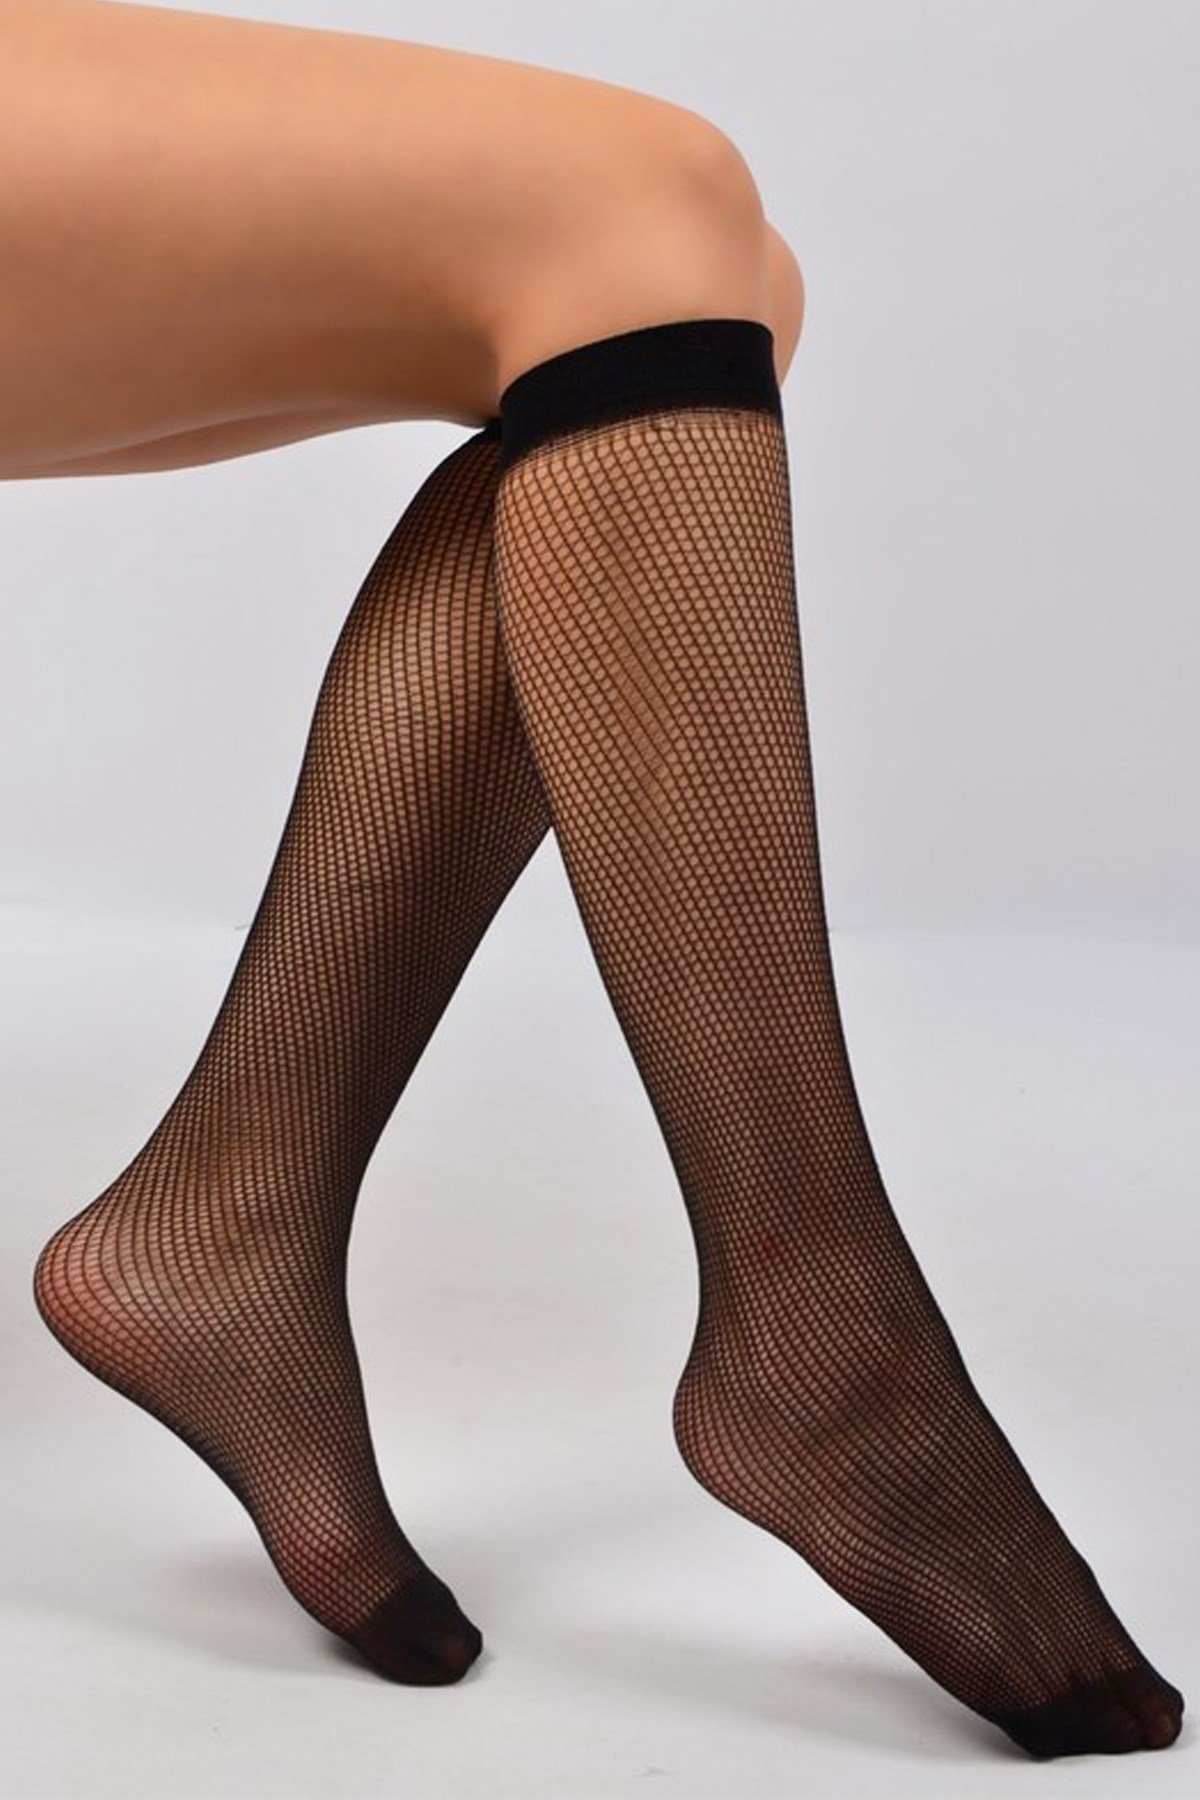 Penti Kadın İnce File Pantolon Çorabı Yeni Sezon! Moda! Ürünler Rakipsiz  Fiyatlar İç Giyim, Ev Tekstili, Kozmetik, Çeyiz ve Daha Fazlası |  yoncatoptan.com